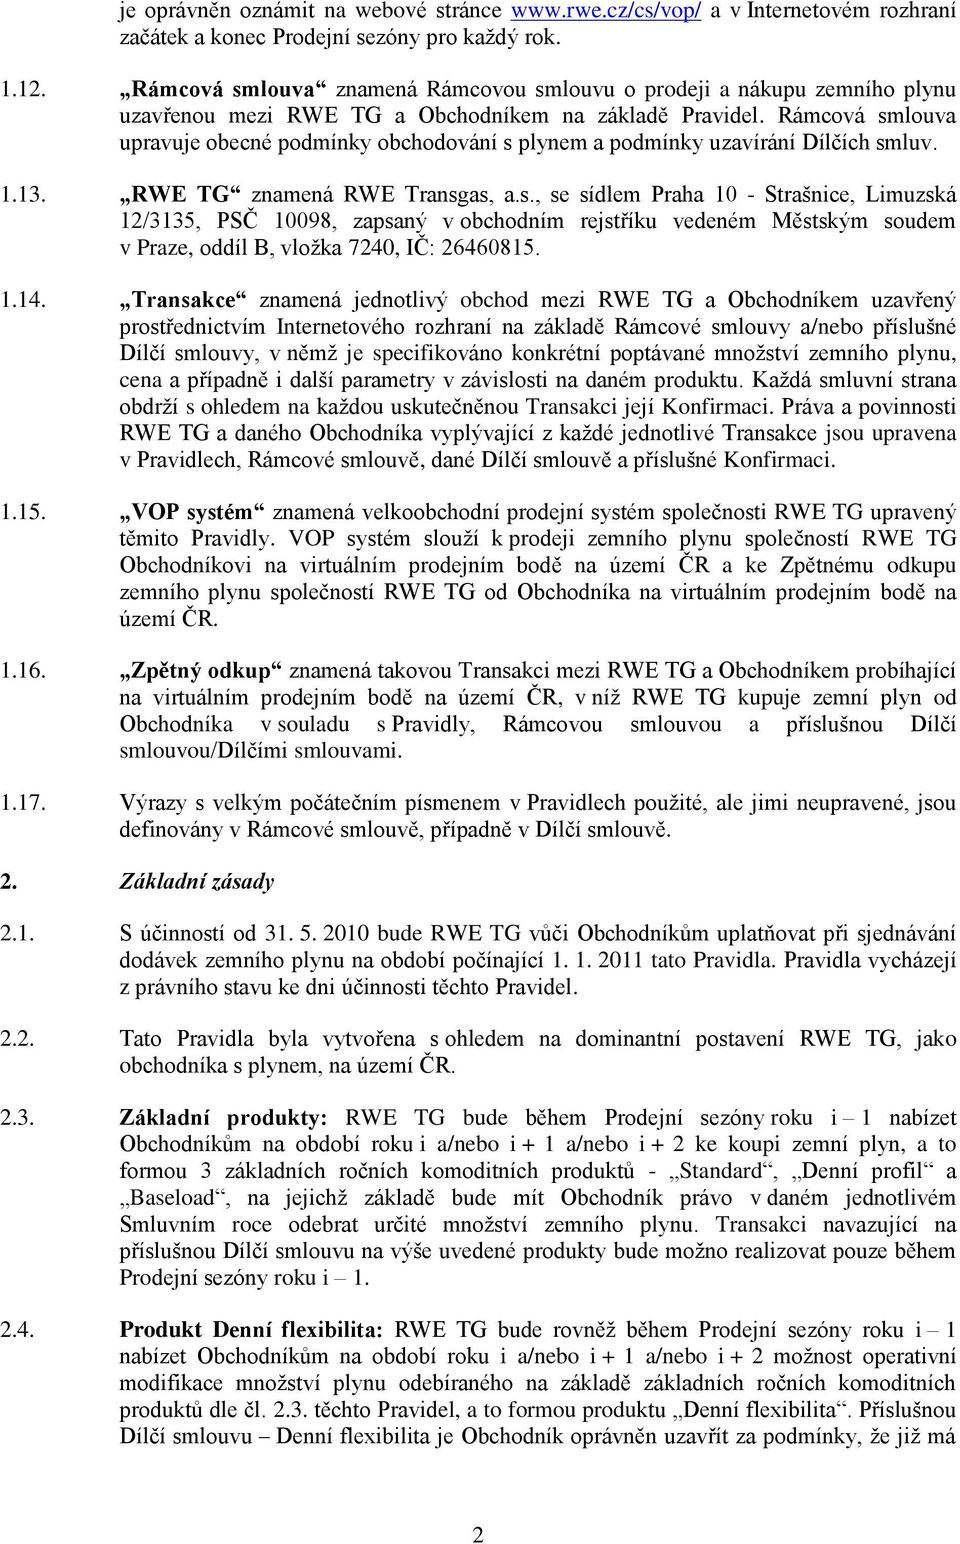 Rámcová smlouva upravuje obecné podmínky obchodování s plynem a podmínky uzavírání Dílčích smluv. 1.13. RWE TG znamená RWE Transgas, a.s., se sídlem Praha 10 - Strašnice, Limuzská 12/3135, PSČ 10098, zapsaný v obchodním rejstříku vedeném Městským soudem v Praze, oddíl B, vložka 7240, IČ: 26460815.